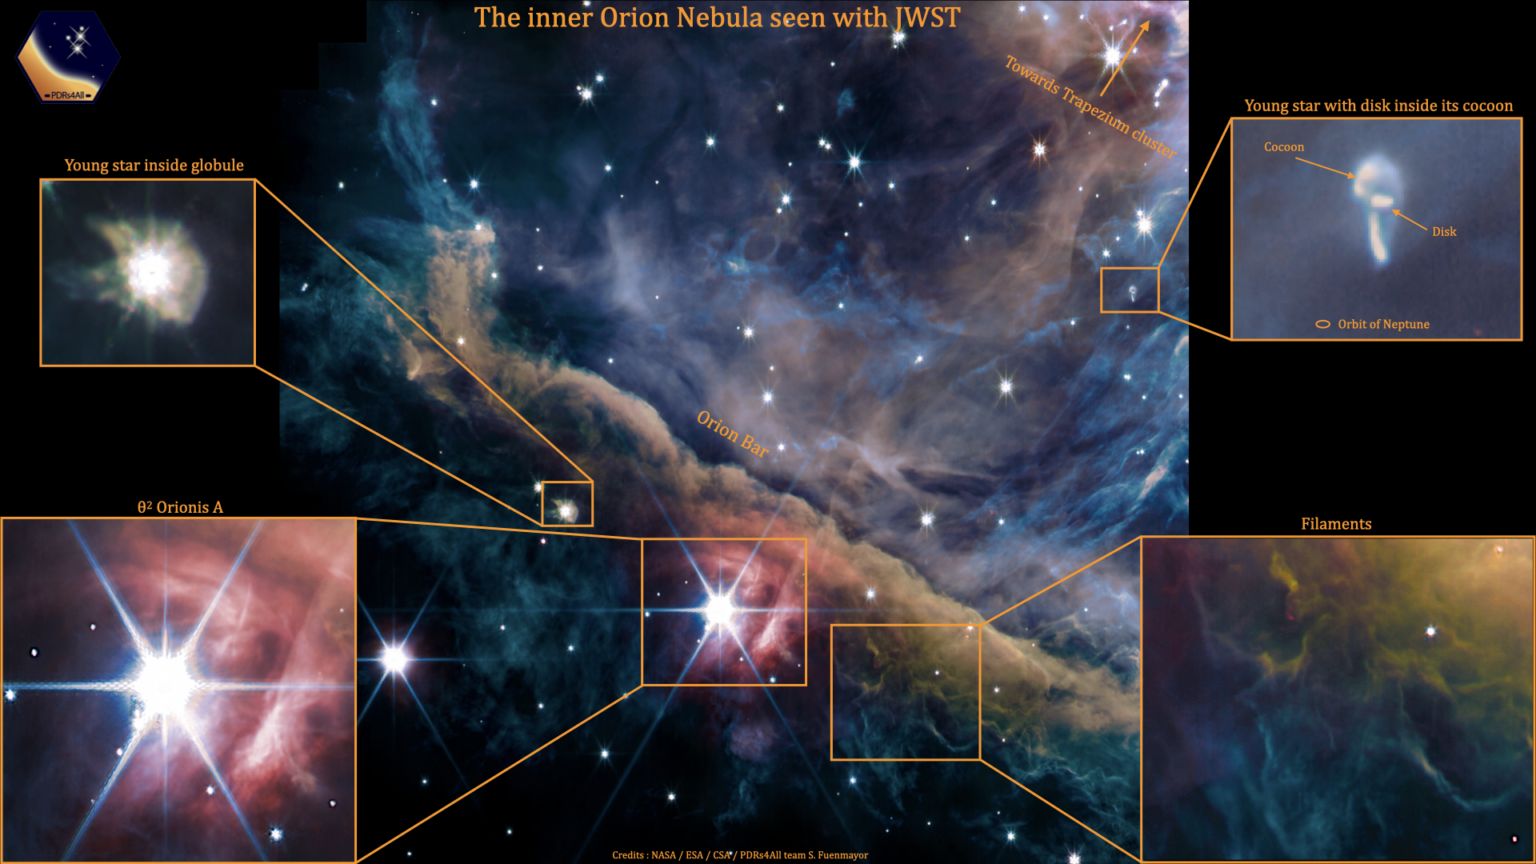 Una versión etiquetada de la imagen jwst de la nebulosa de Orión, que muestra estrellas jóvenes y estructuras de gas.